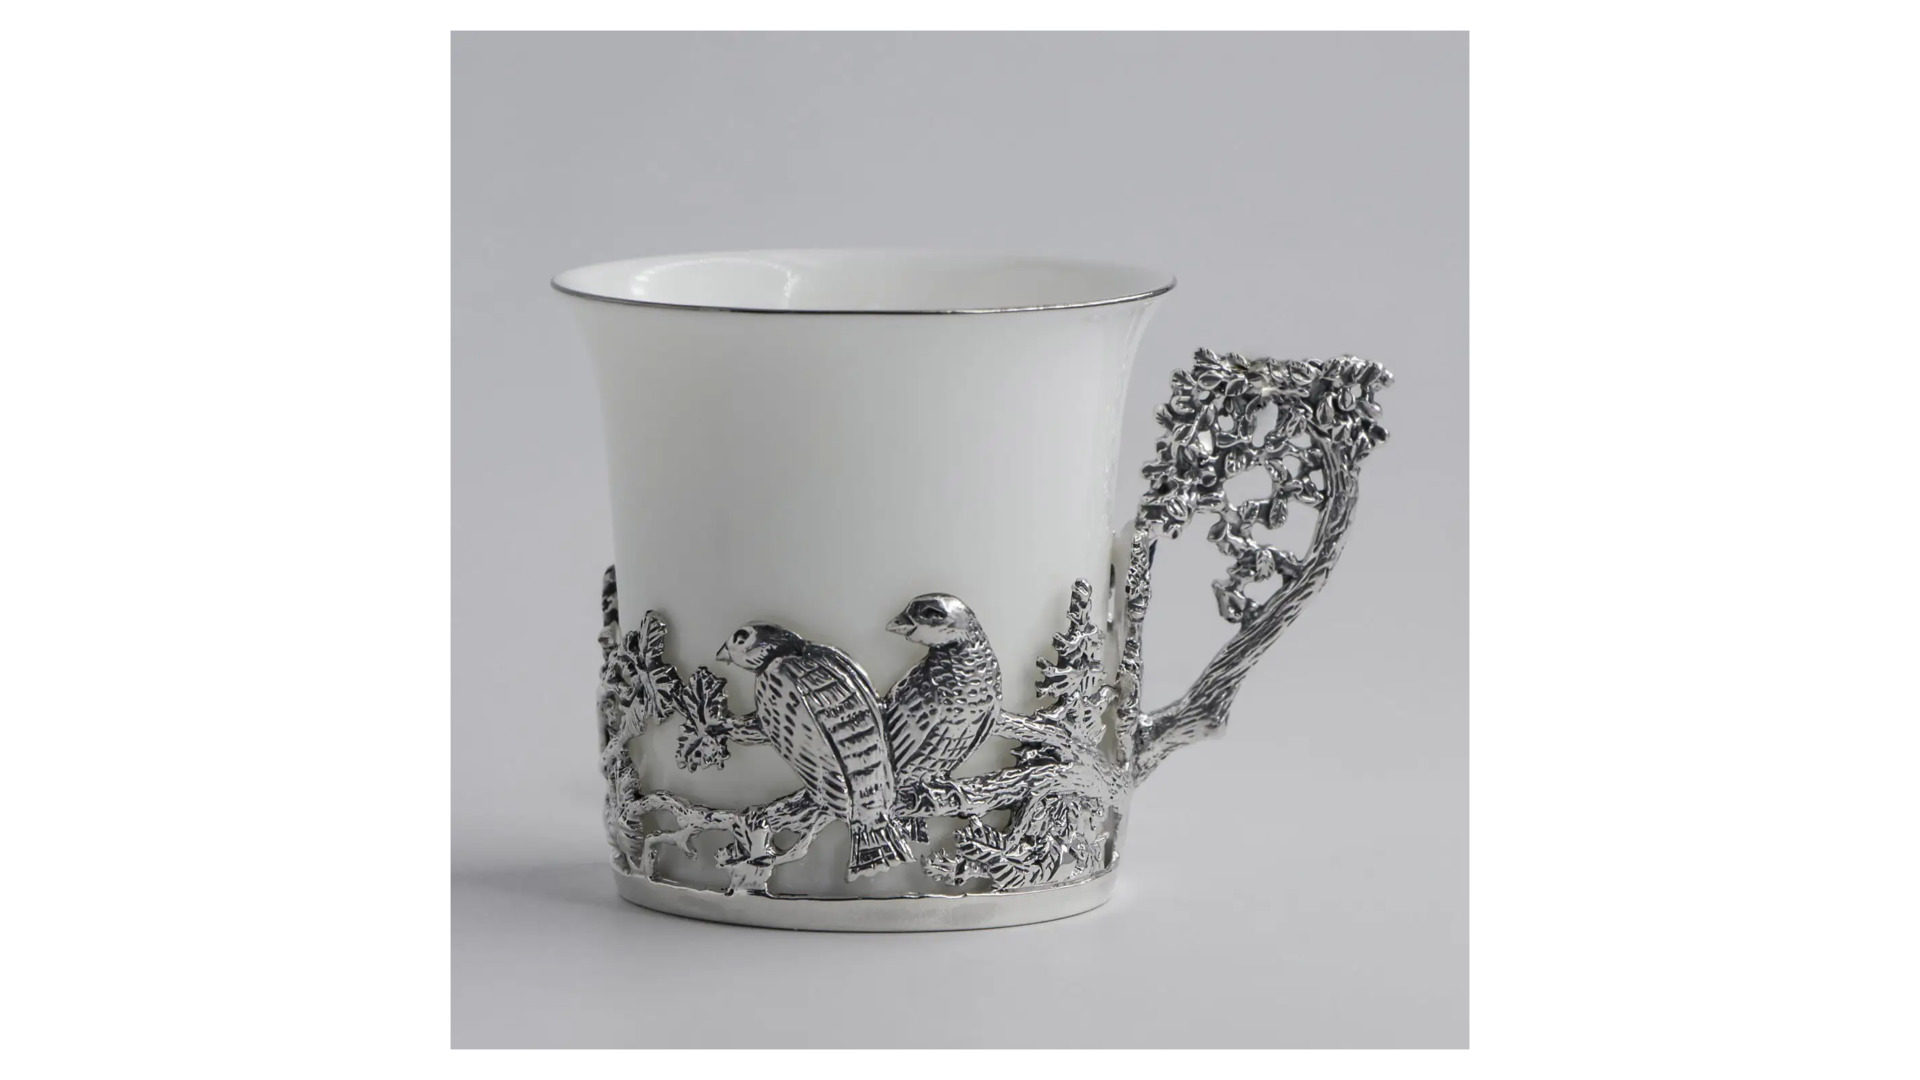 Набор чашек кофейных с ложками в футляре Аргента Глухарь 119,57 г, 4 предмета, серебро 925